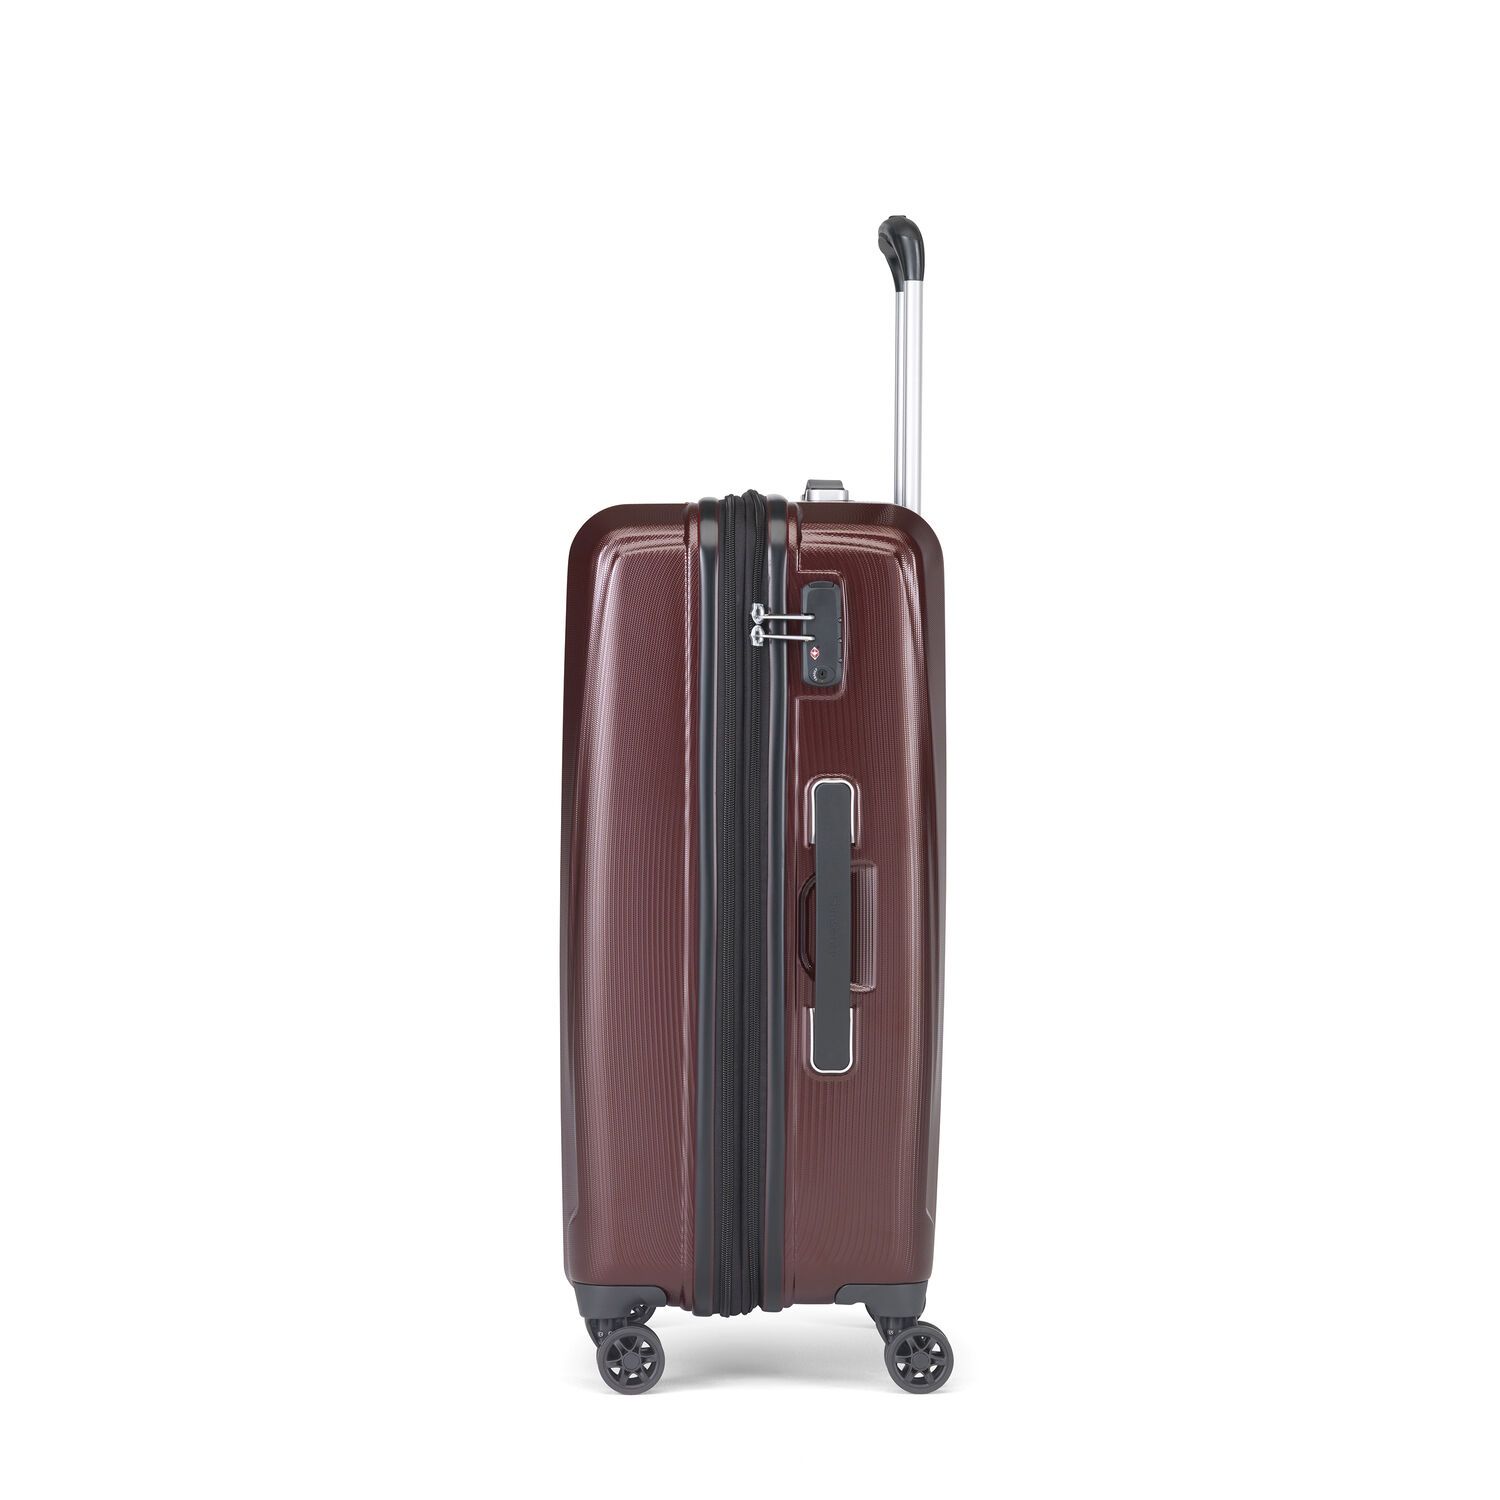 Samsonite Pursuit DLX Plus Spinner Medium Expandable Luggage